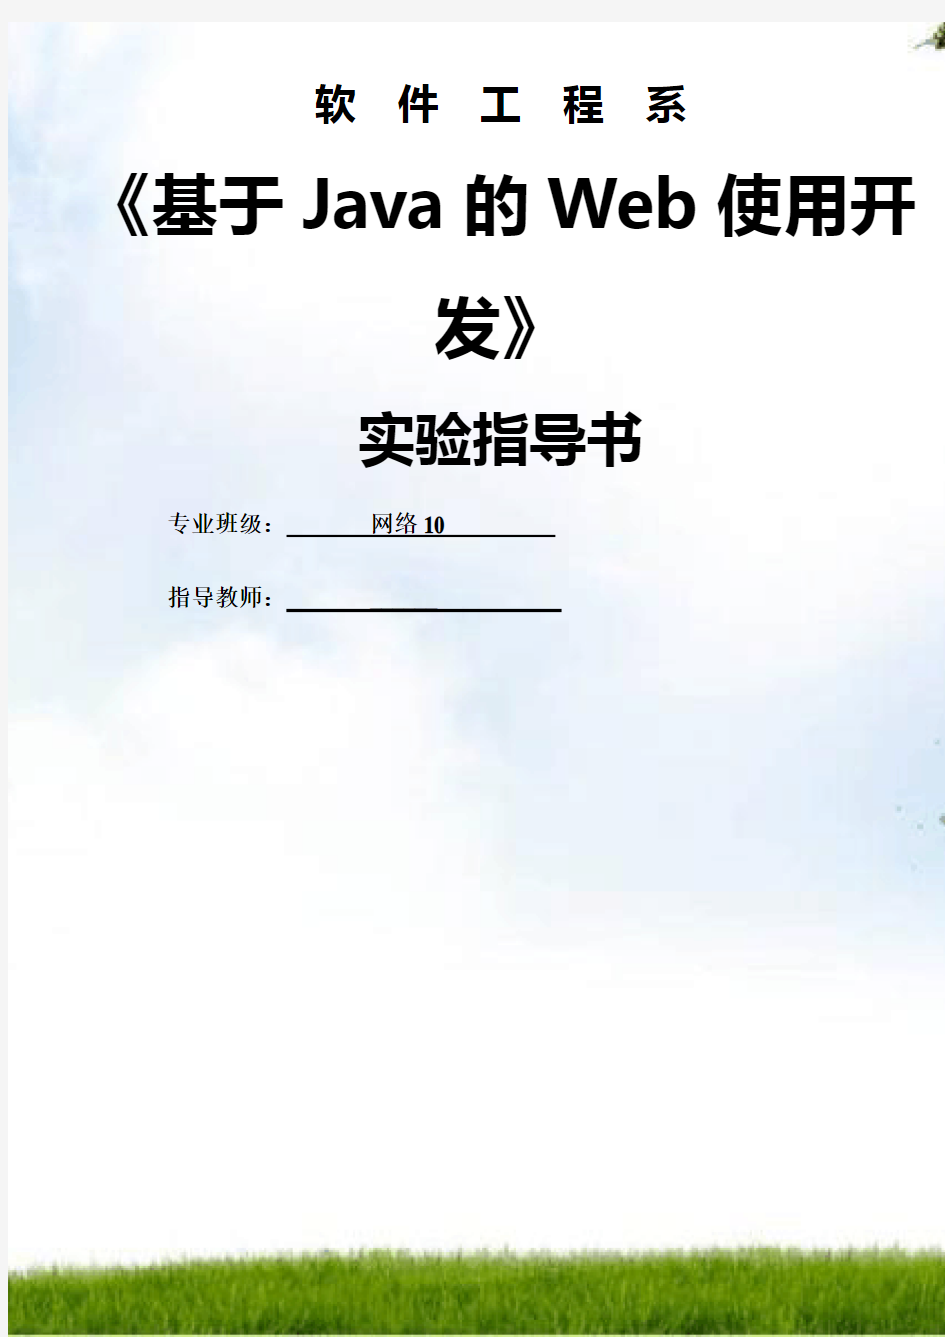 《基于Java技术的Web应用开发》实验指导书